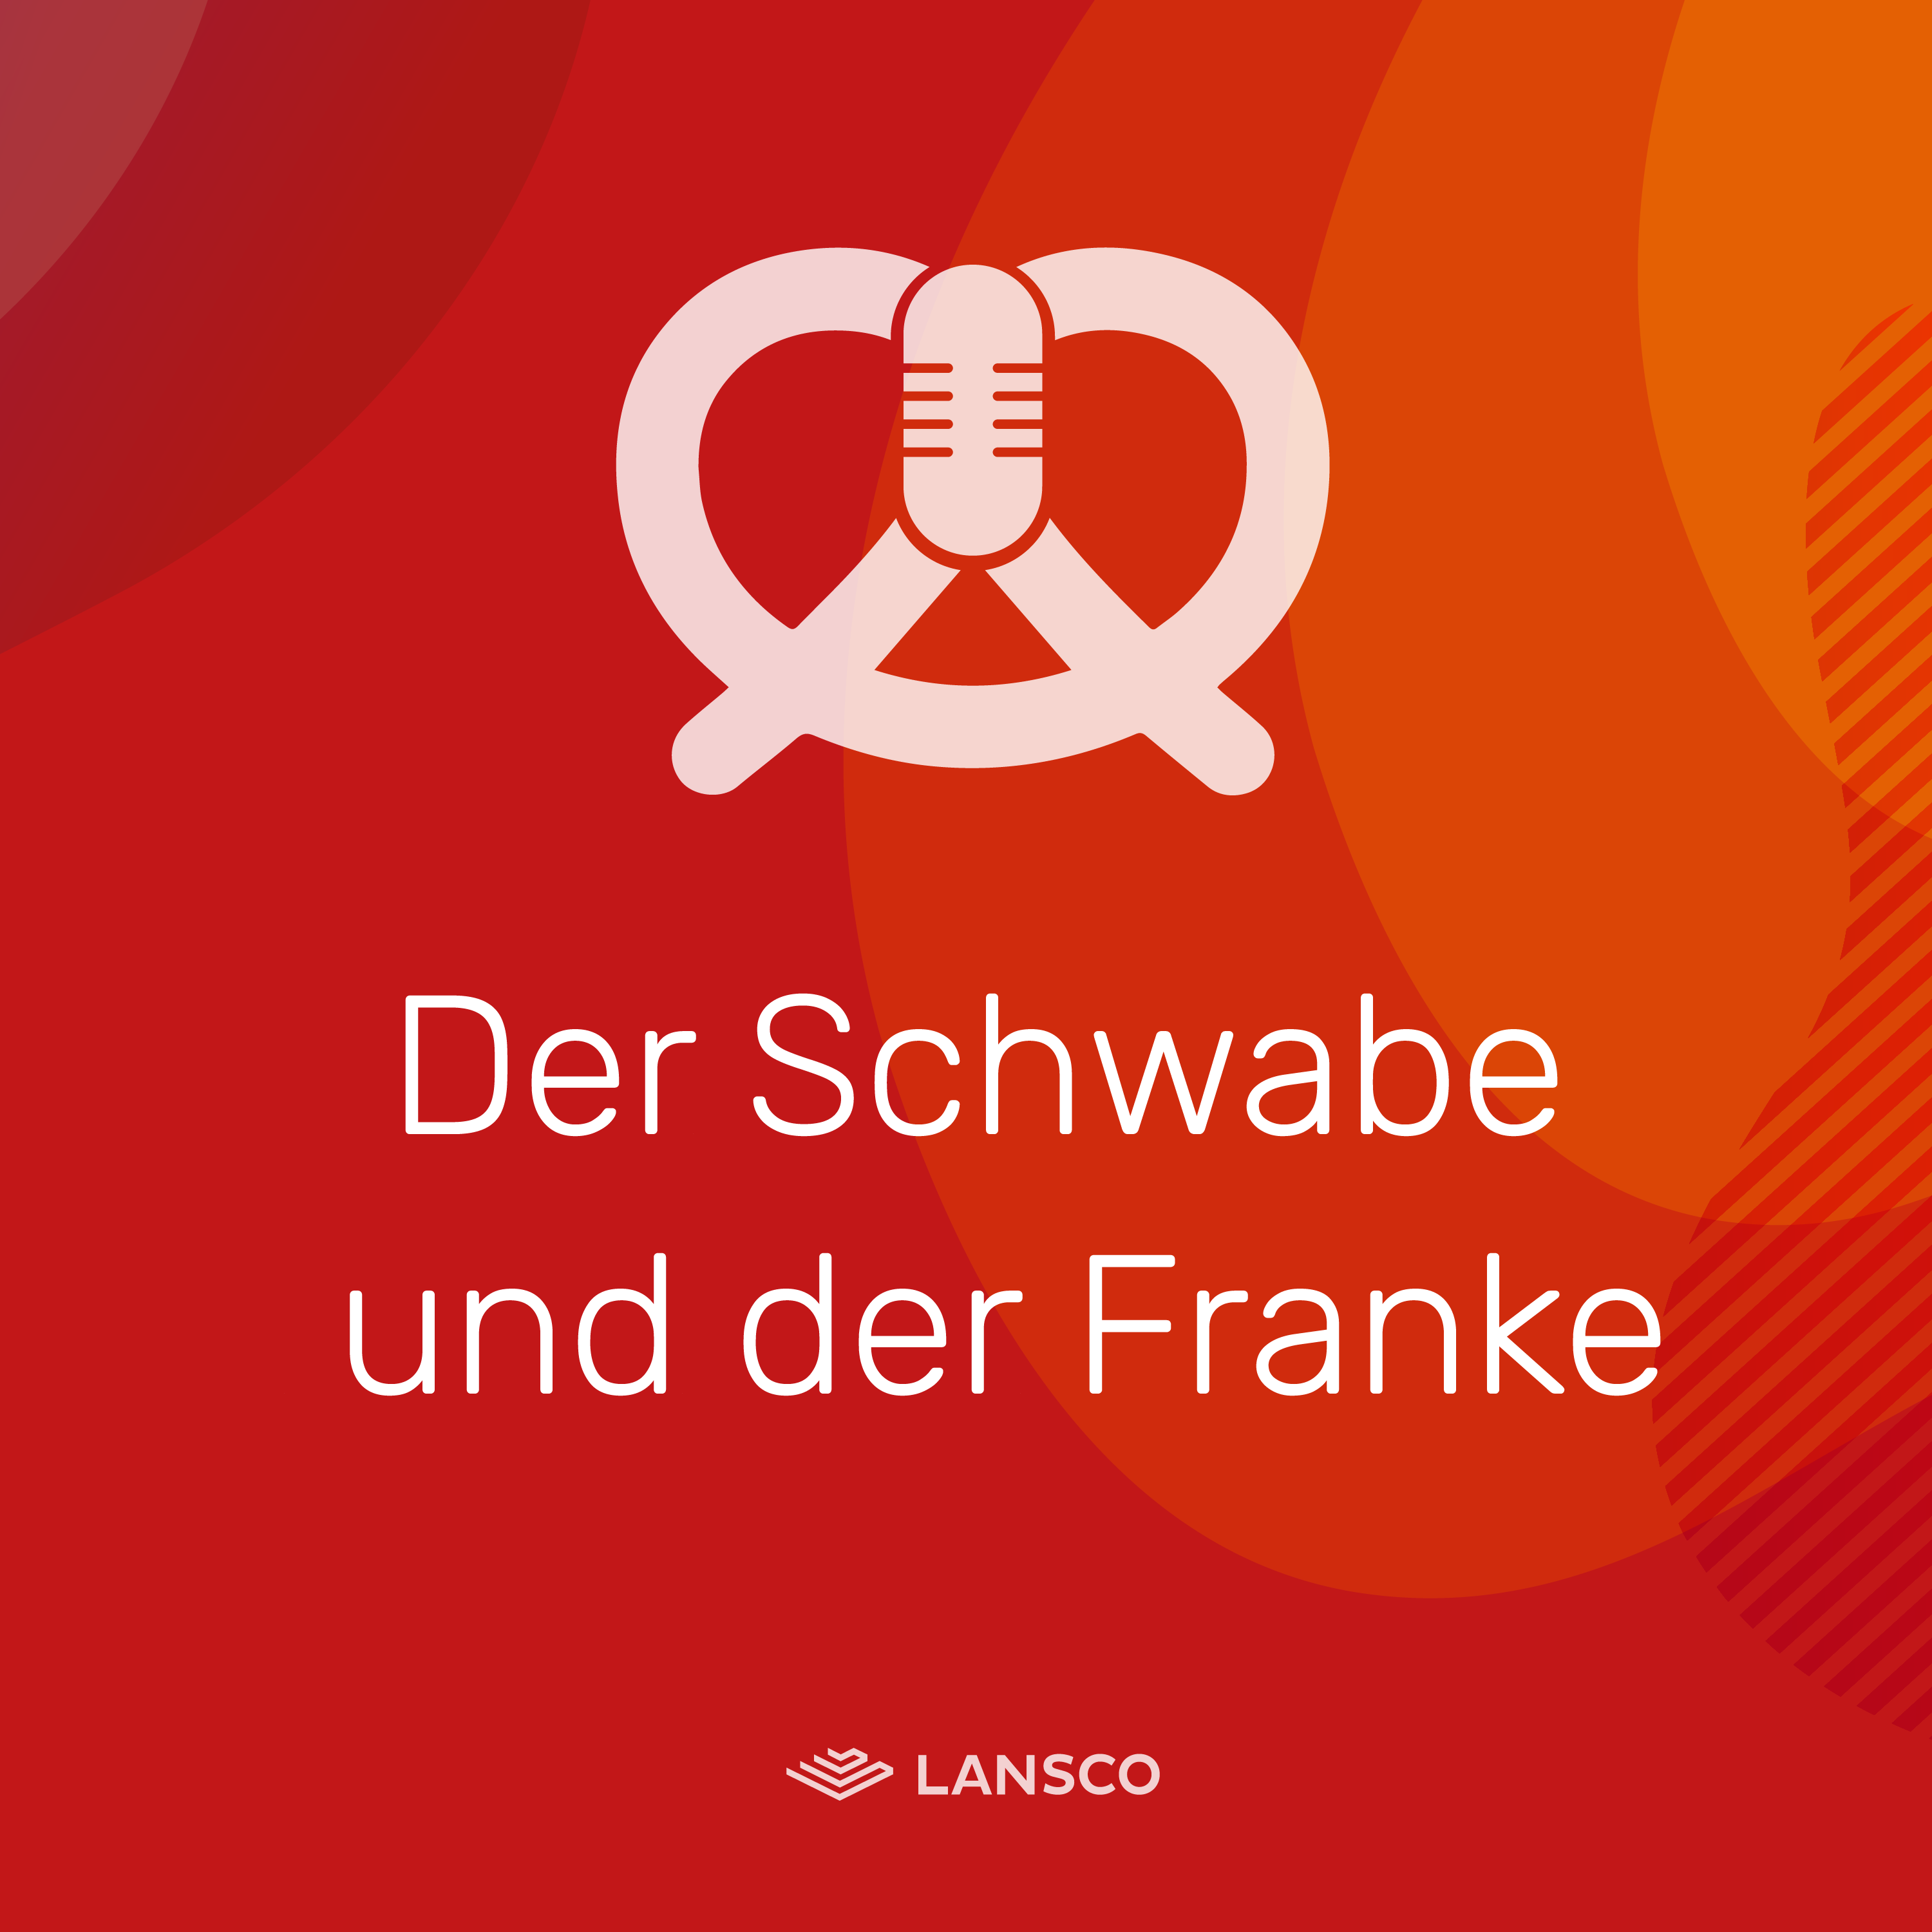 Der Schwabe & der Franke - New Work & Technology Podcast